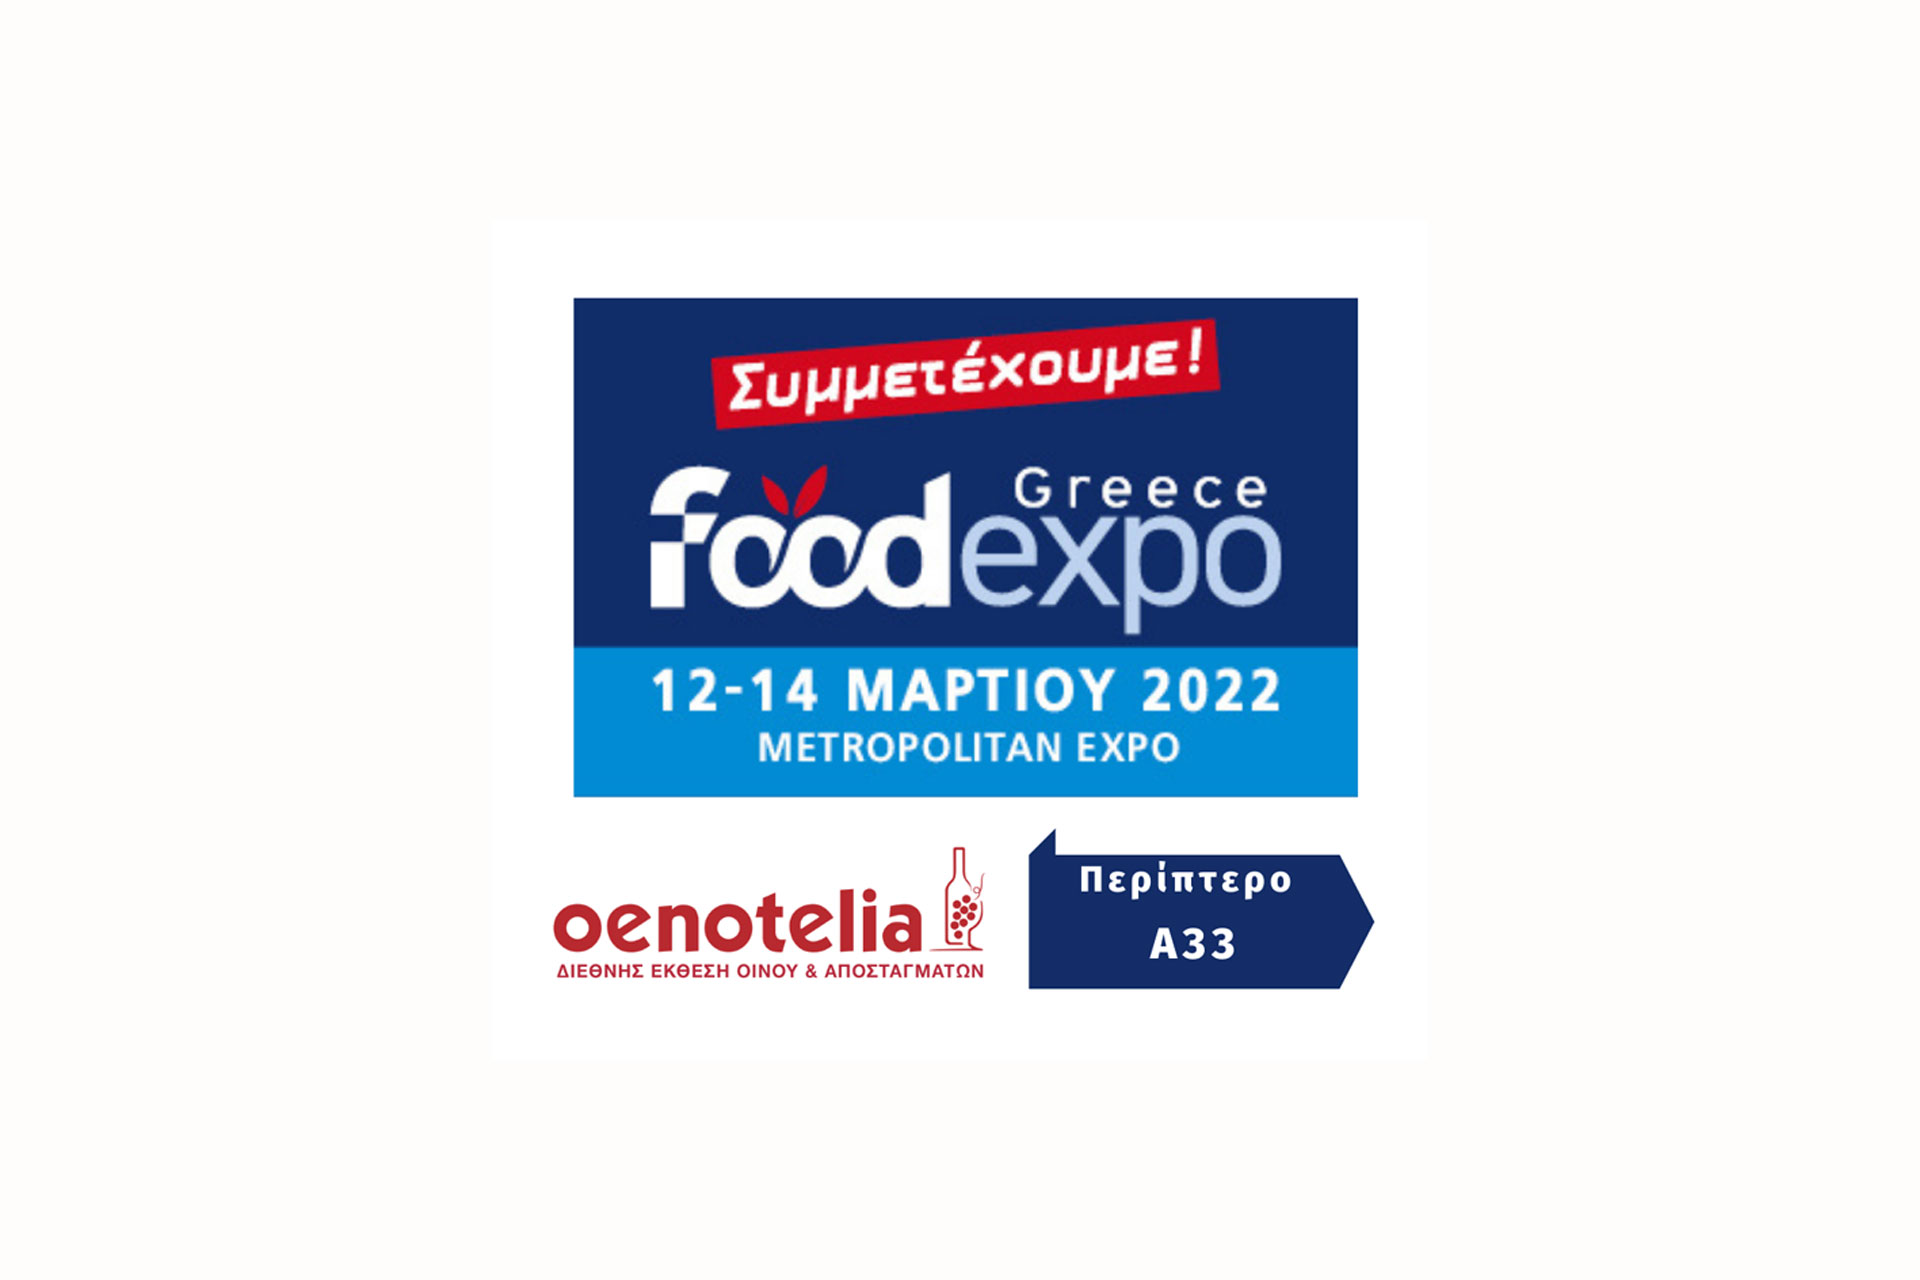 Συμμετέχουμε στην έκθεση Food Expo - Oenotelia, 12-14 Μαρτίου Περίπτερο Α33